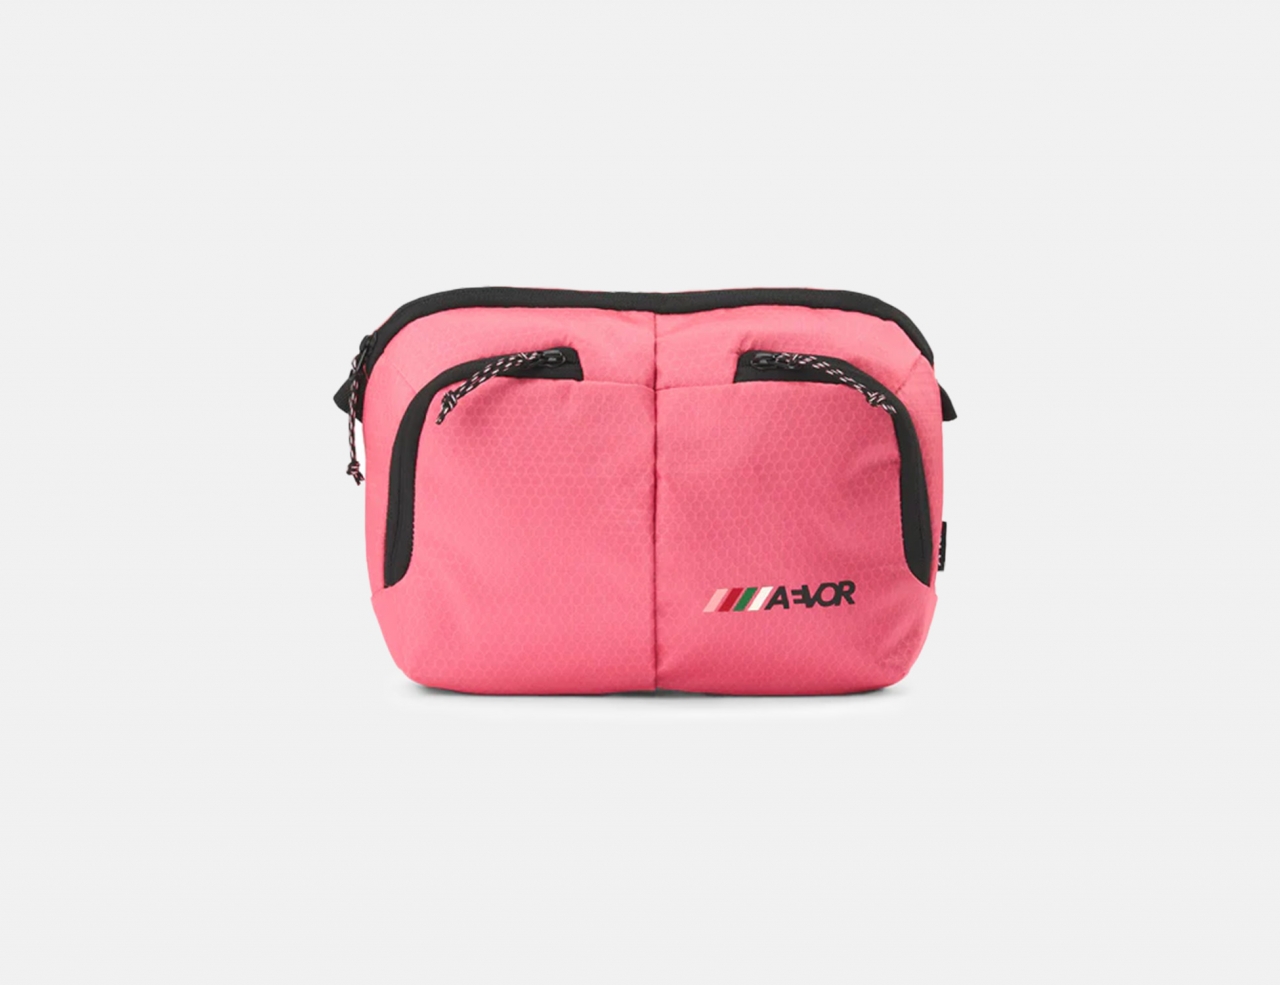 Aevor Sacoche Bag - Proof Pink Flash